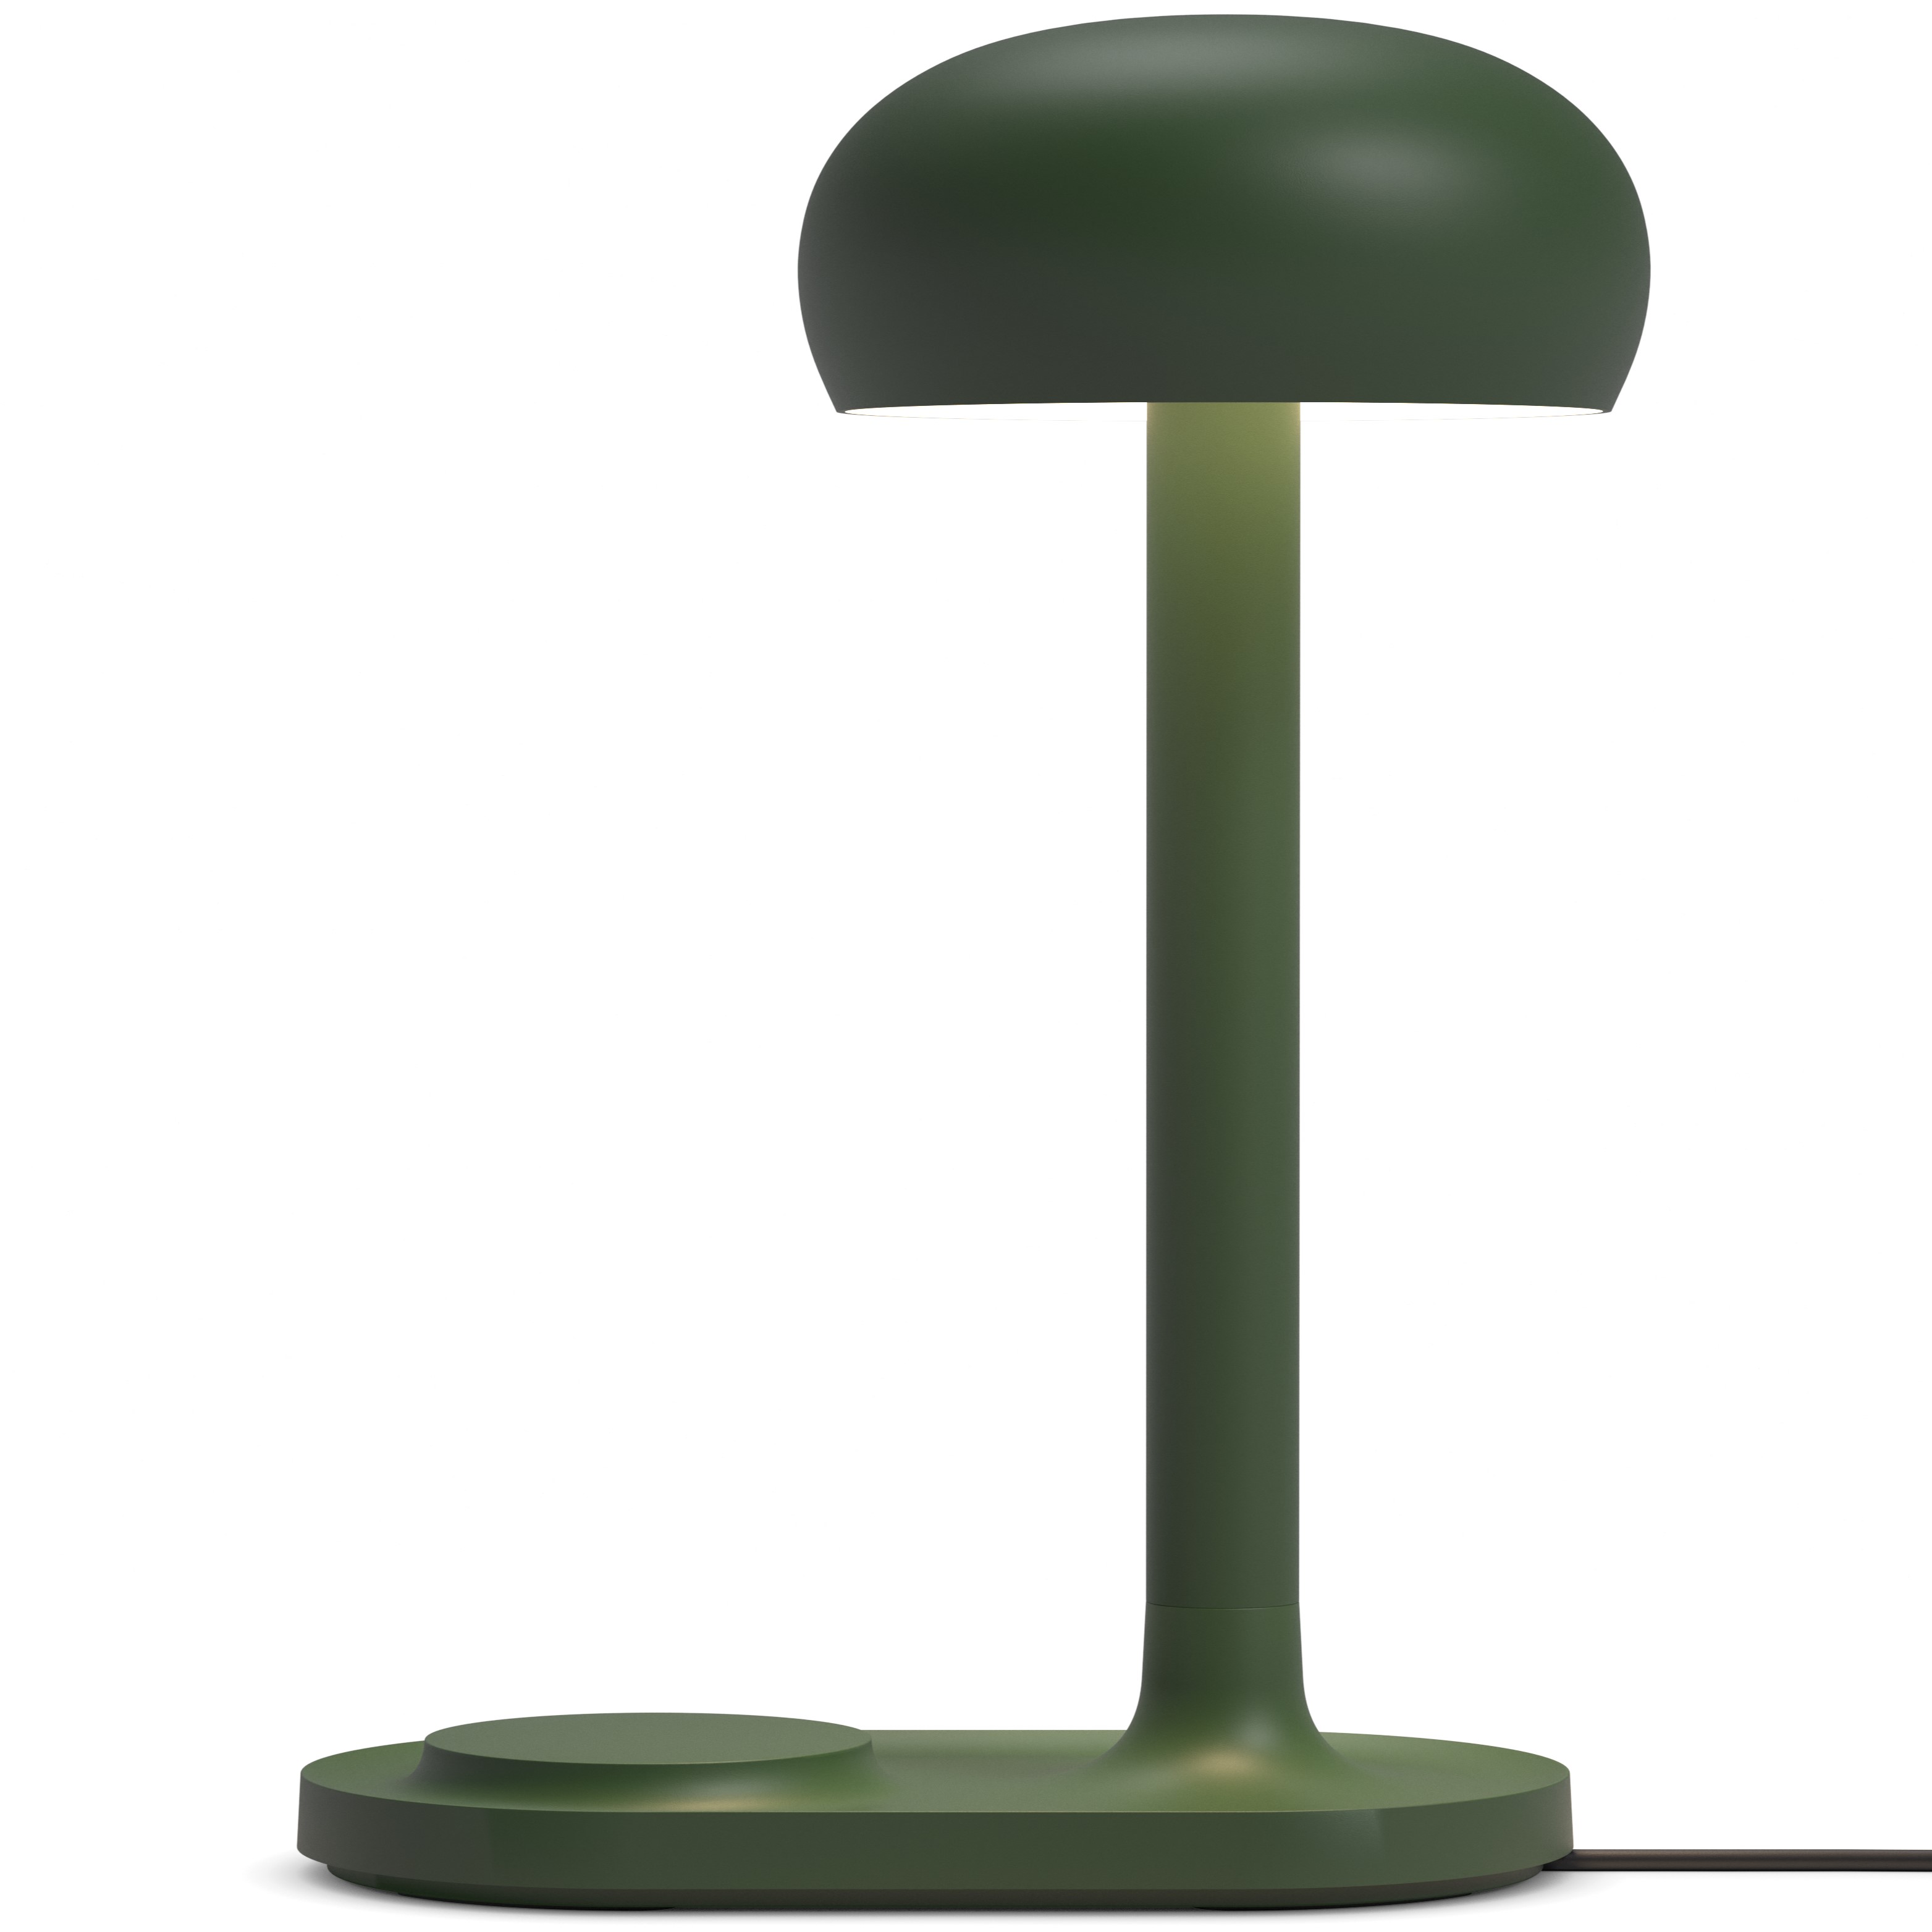 Stolní lampa EMENDO 29 cm, s Qi bezdrátovým nabíjením, emeraldově zelená, Eva Solo